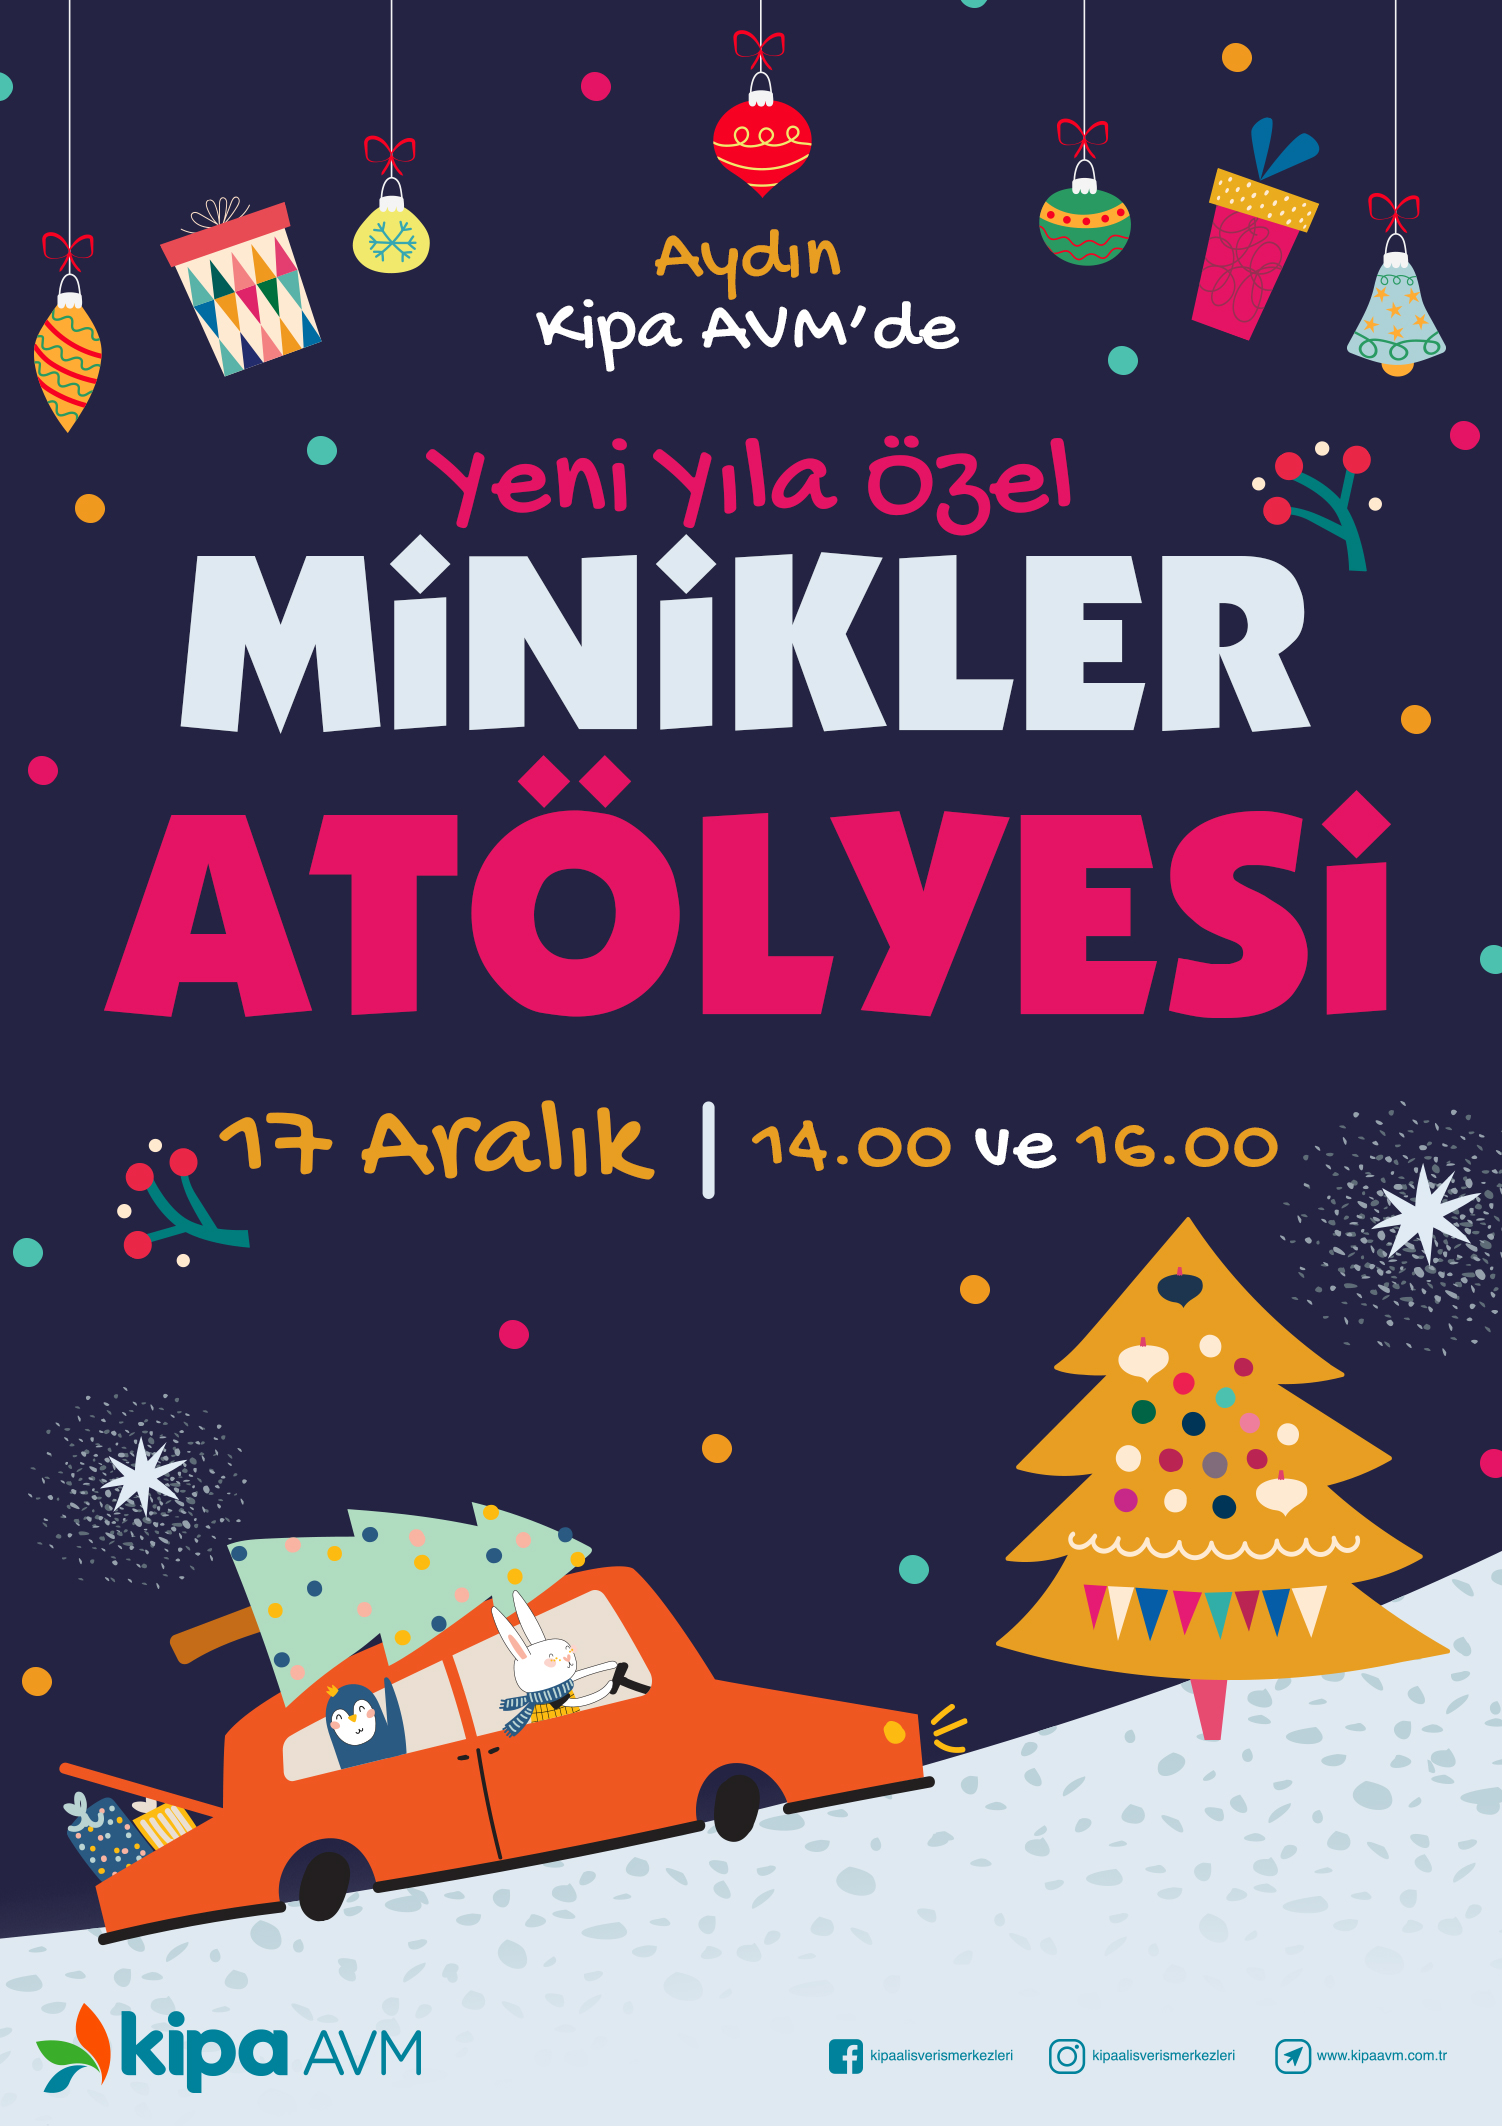 Aydın Kipa AVM'de Yeni Yıla Özel Minikler Atölyesi!